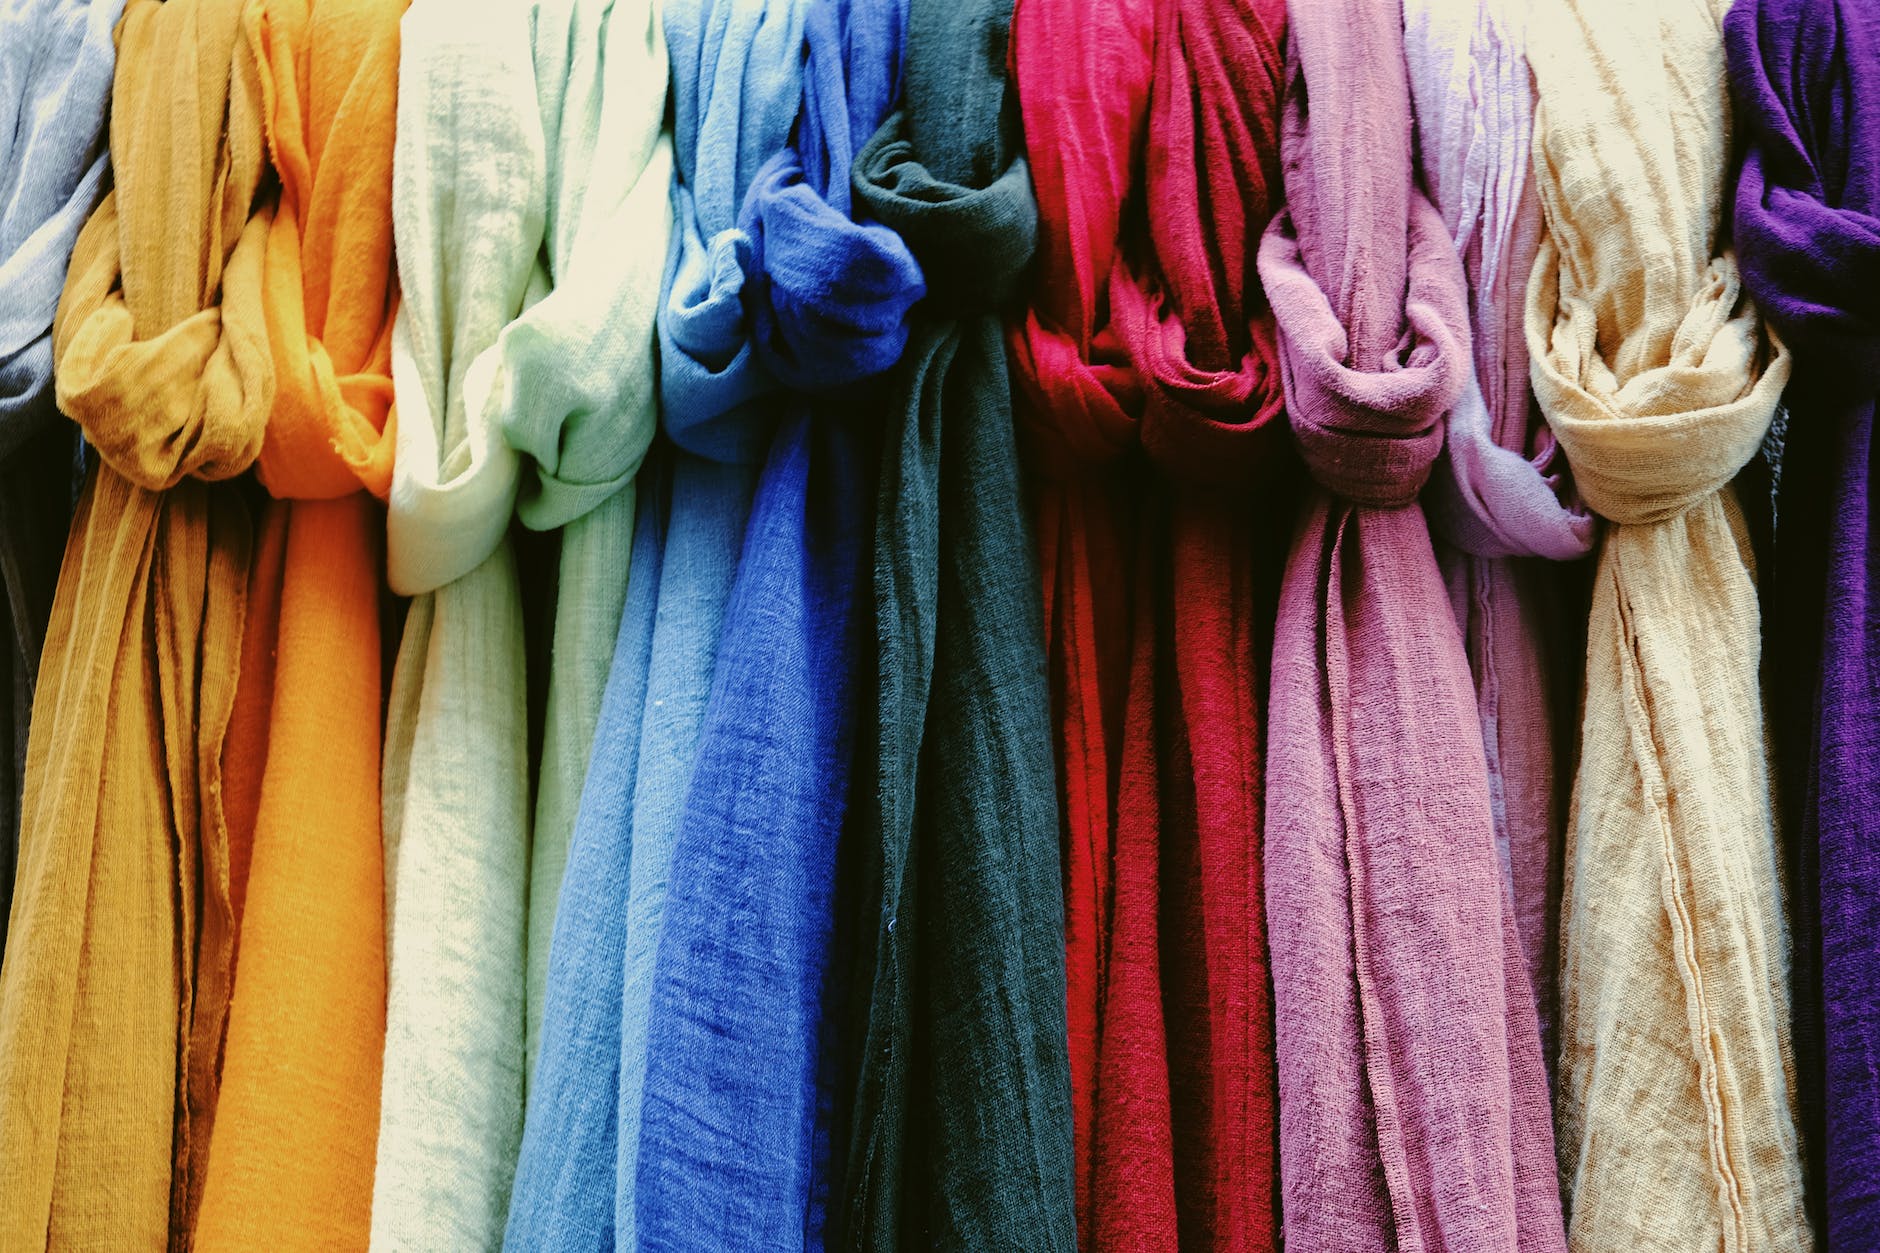 multicolored linen fabrics for sale in shop